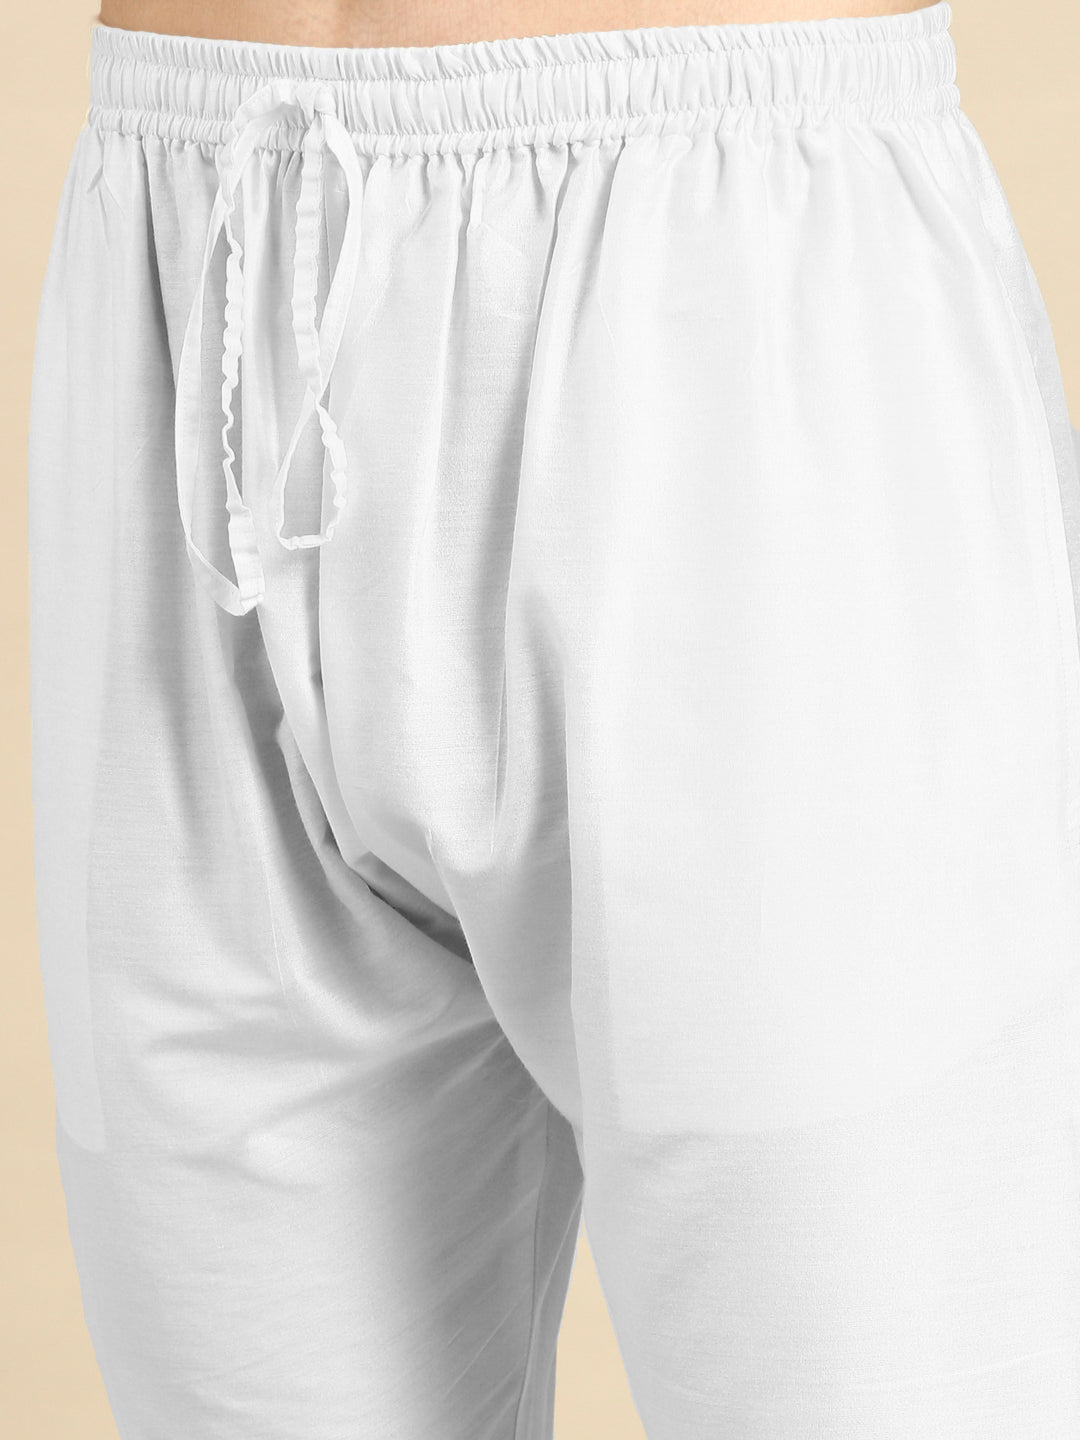 White Cotton Pathani Kurta Set with Patch pocket